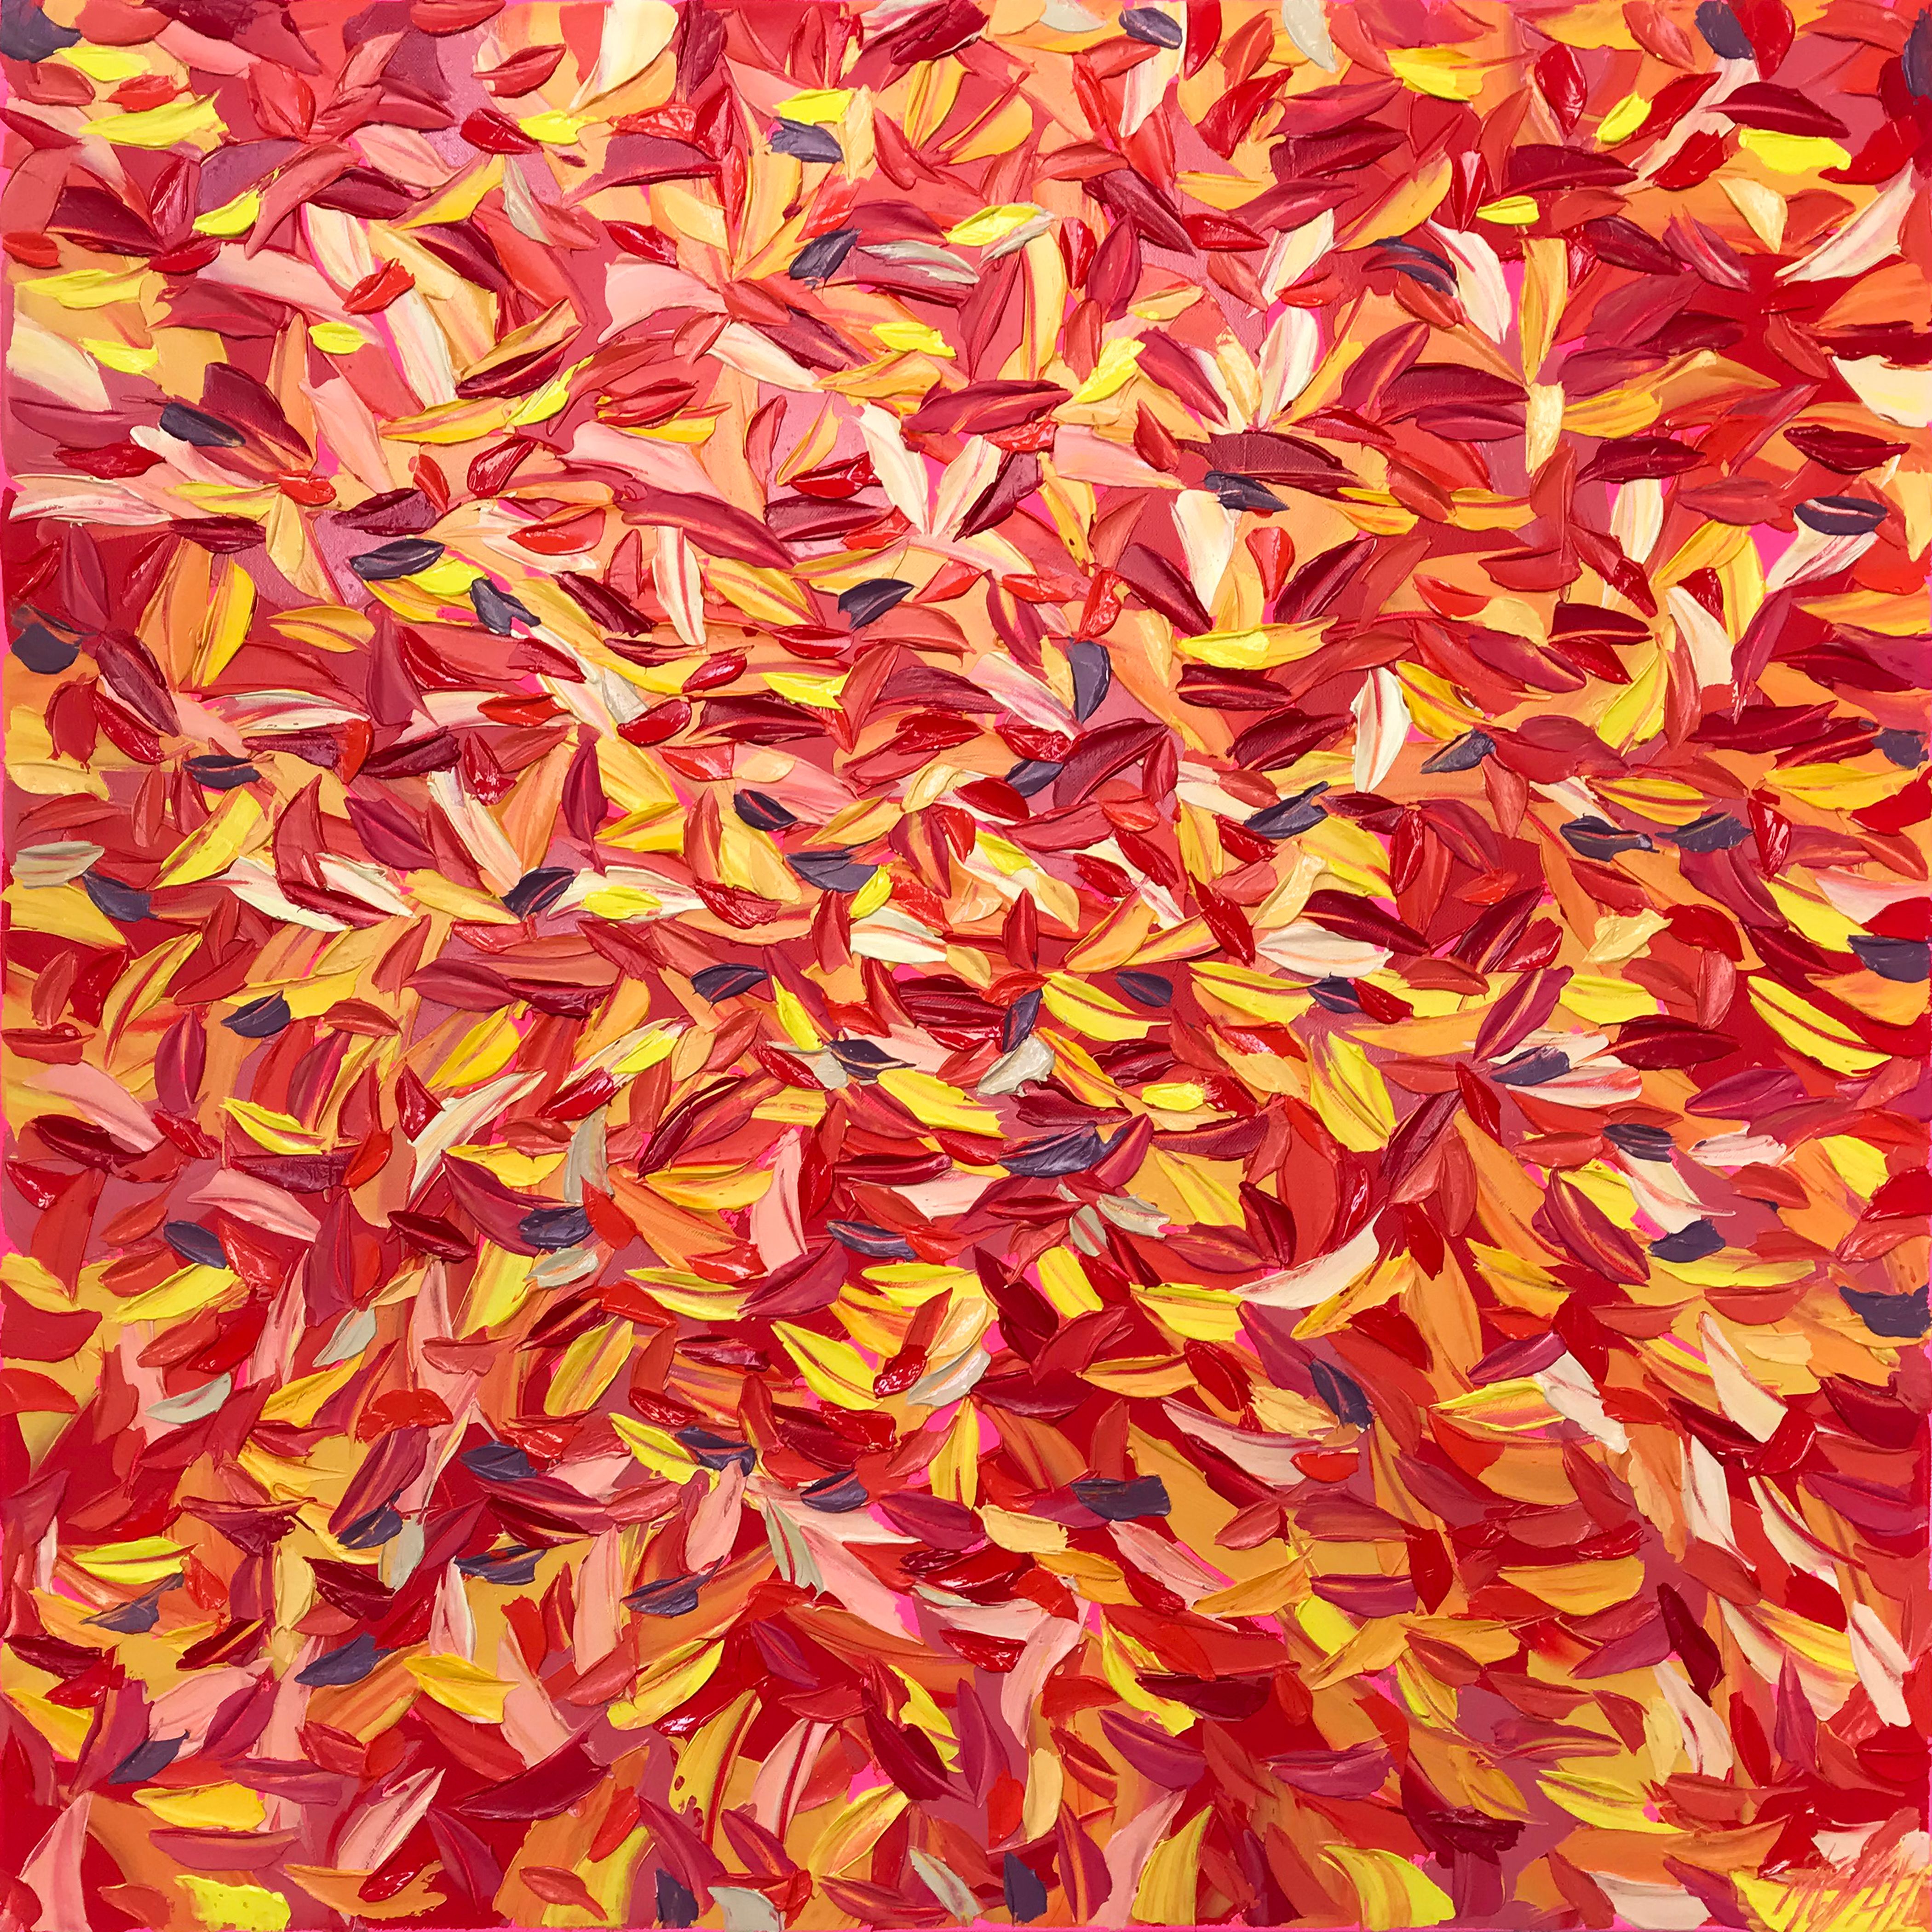 Oliver Messas "Euphorie" Peinture abstraite de feuilles colorées